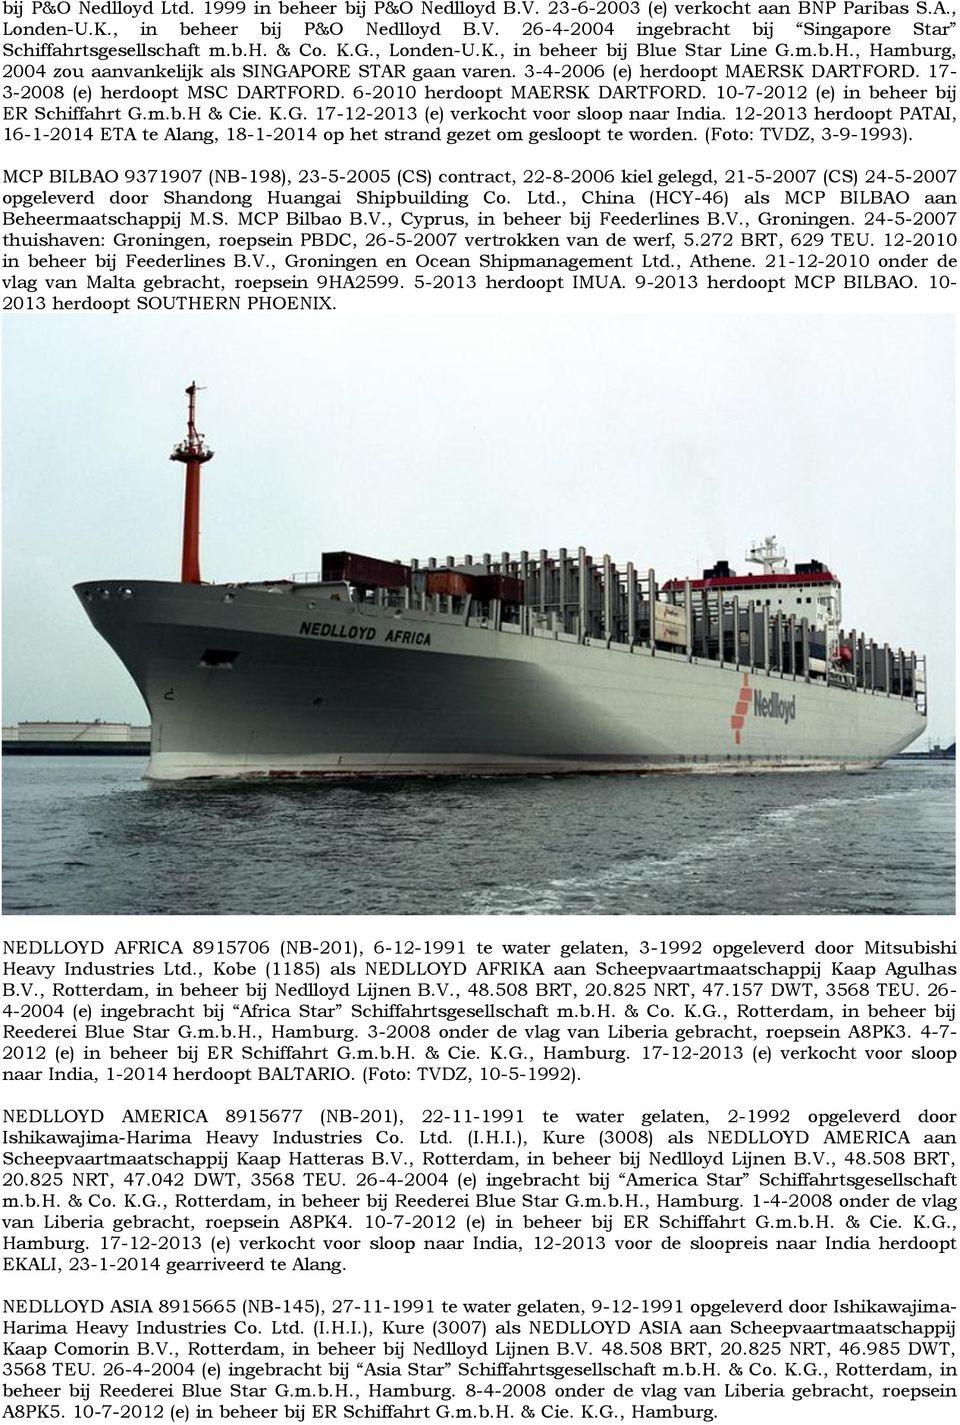 17-3-2008 (e) herdoopt MSC DARTFORD. 6-2010 herdoopt MAERSK DARTFORD. 10-7-2012 (e) in beheer bij ER Schiffahrt G.m.b.H & Cie. K.G. 17-12-2013 (e) verkocht voor sloop naar India.